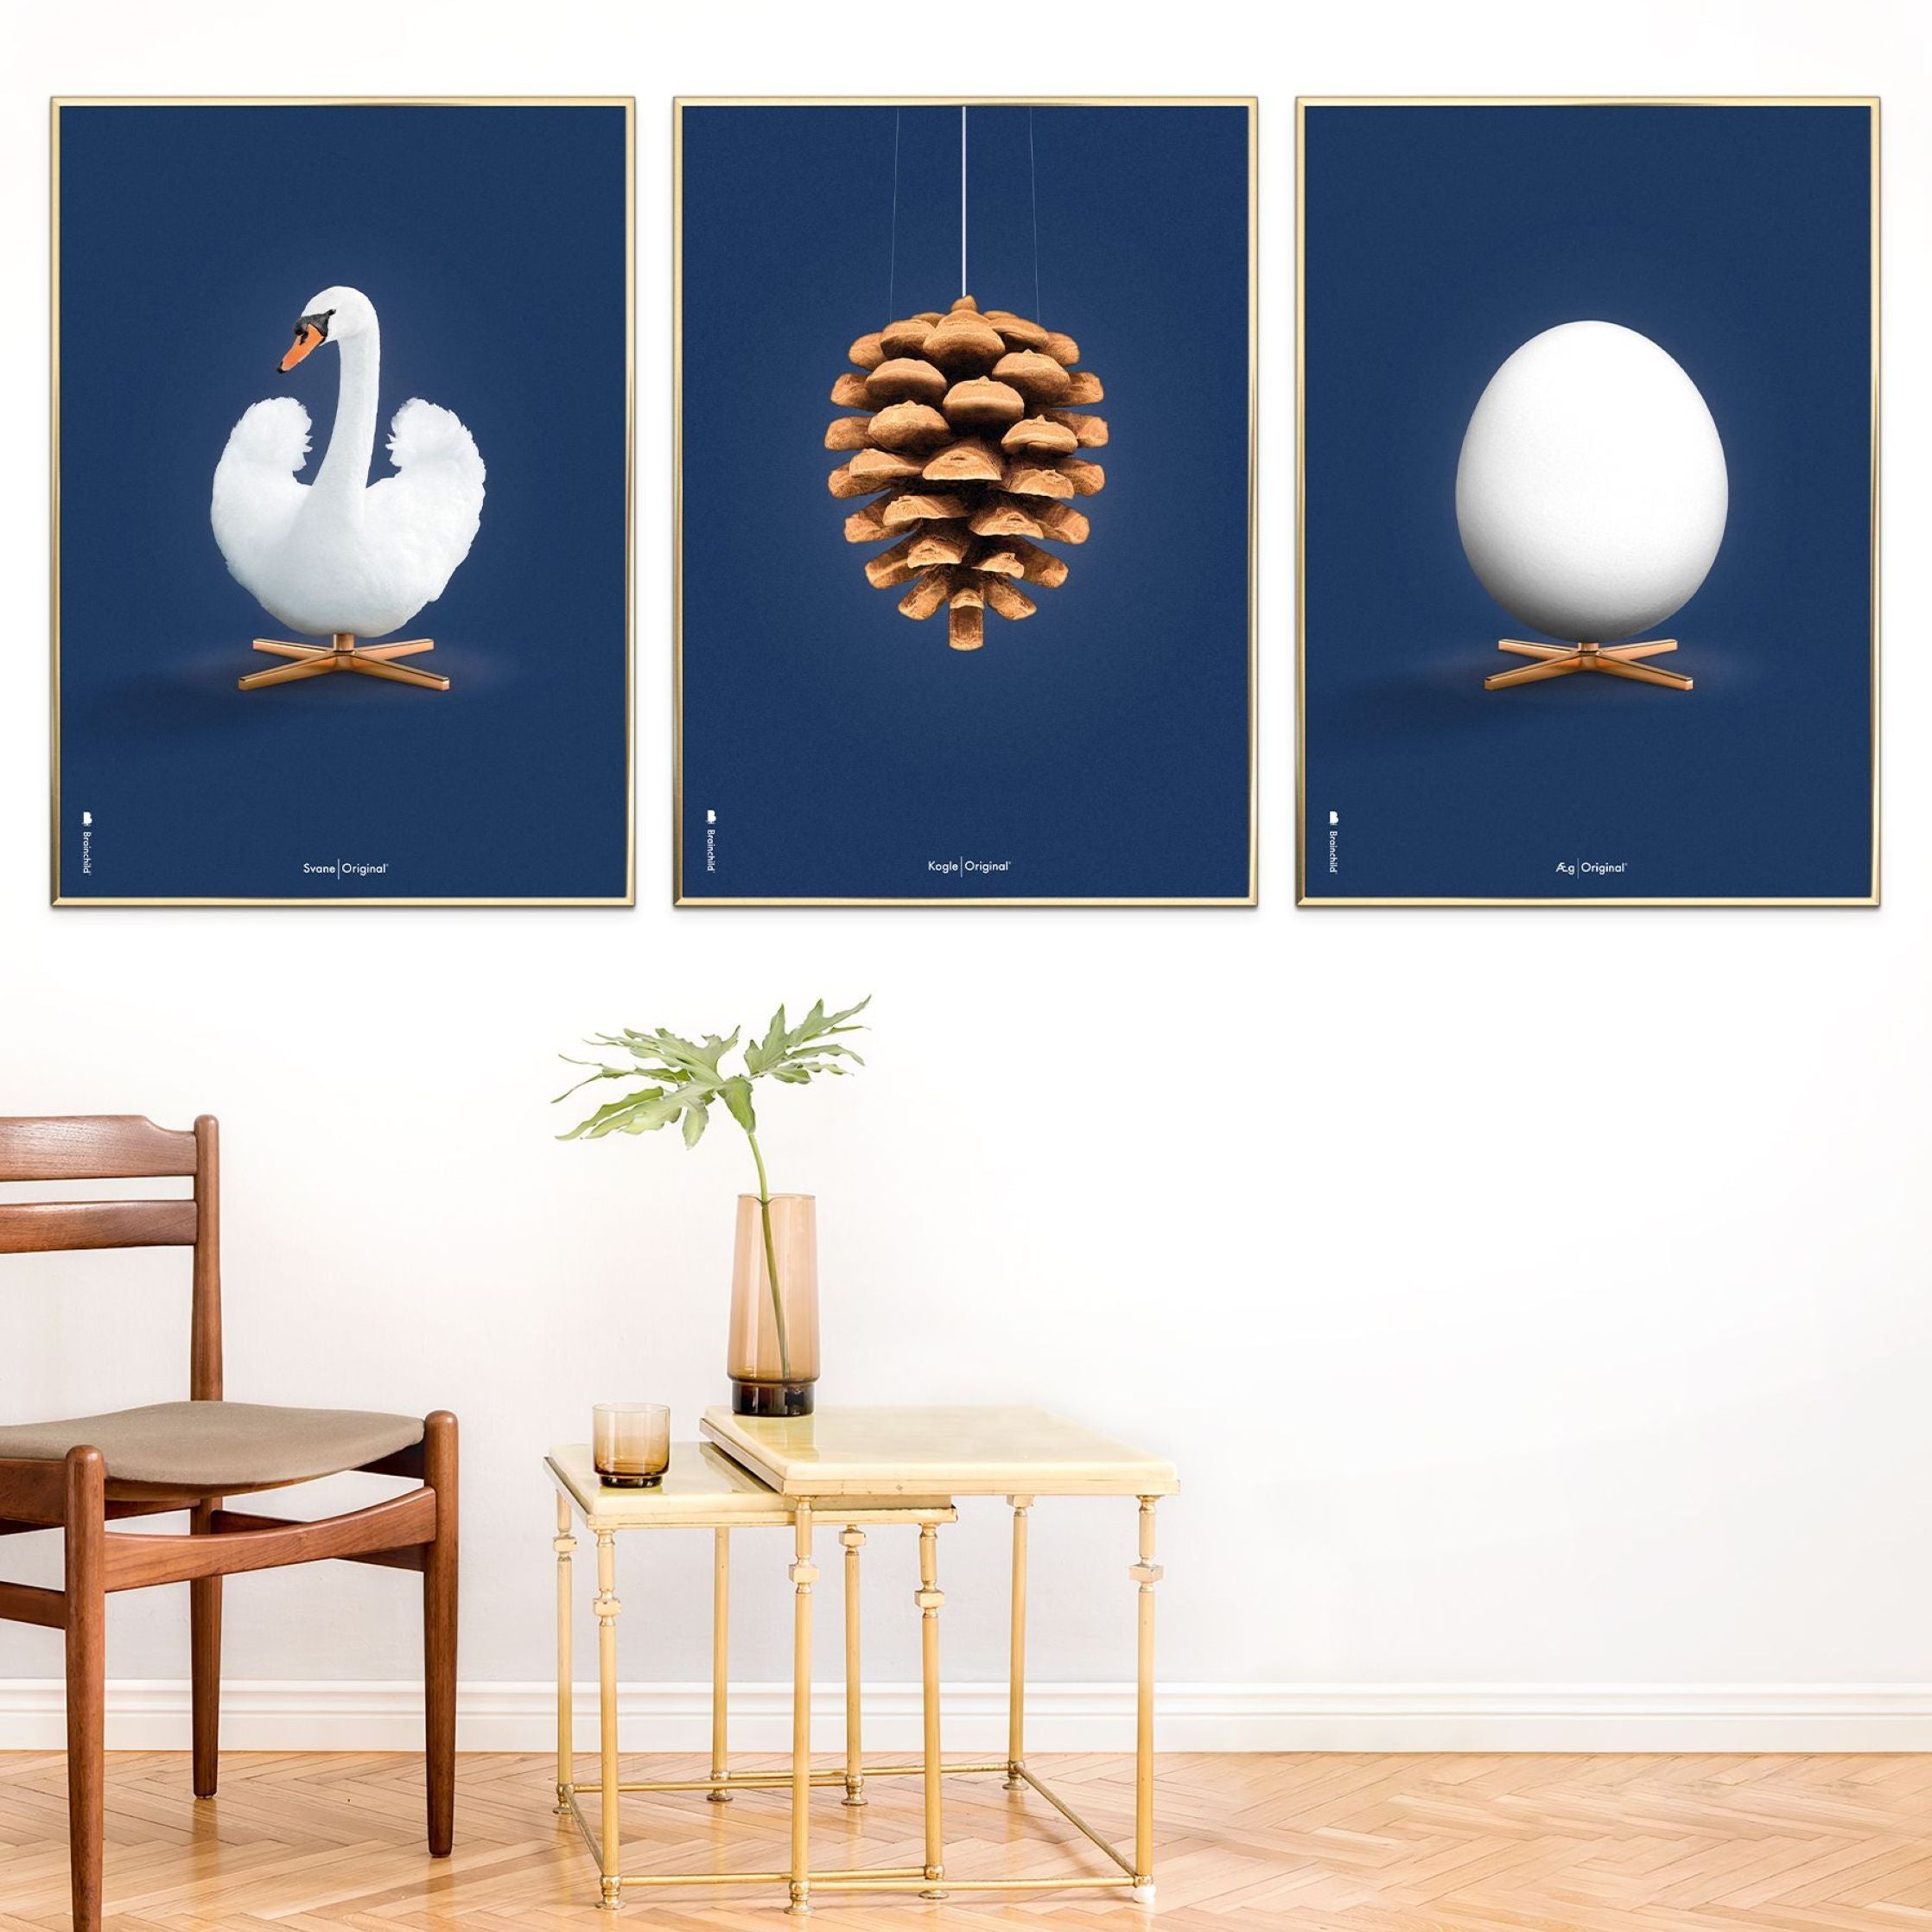 Brainchild Swan Classic Poster, Dark Wood Frame A5, Dark Blue Background